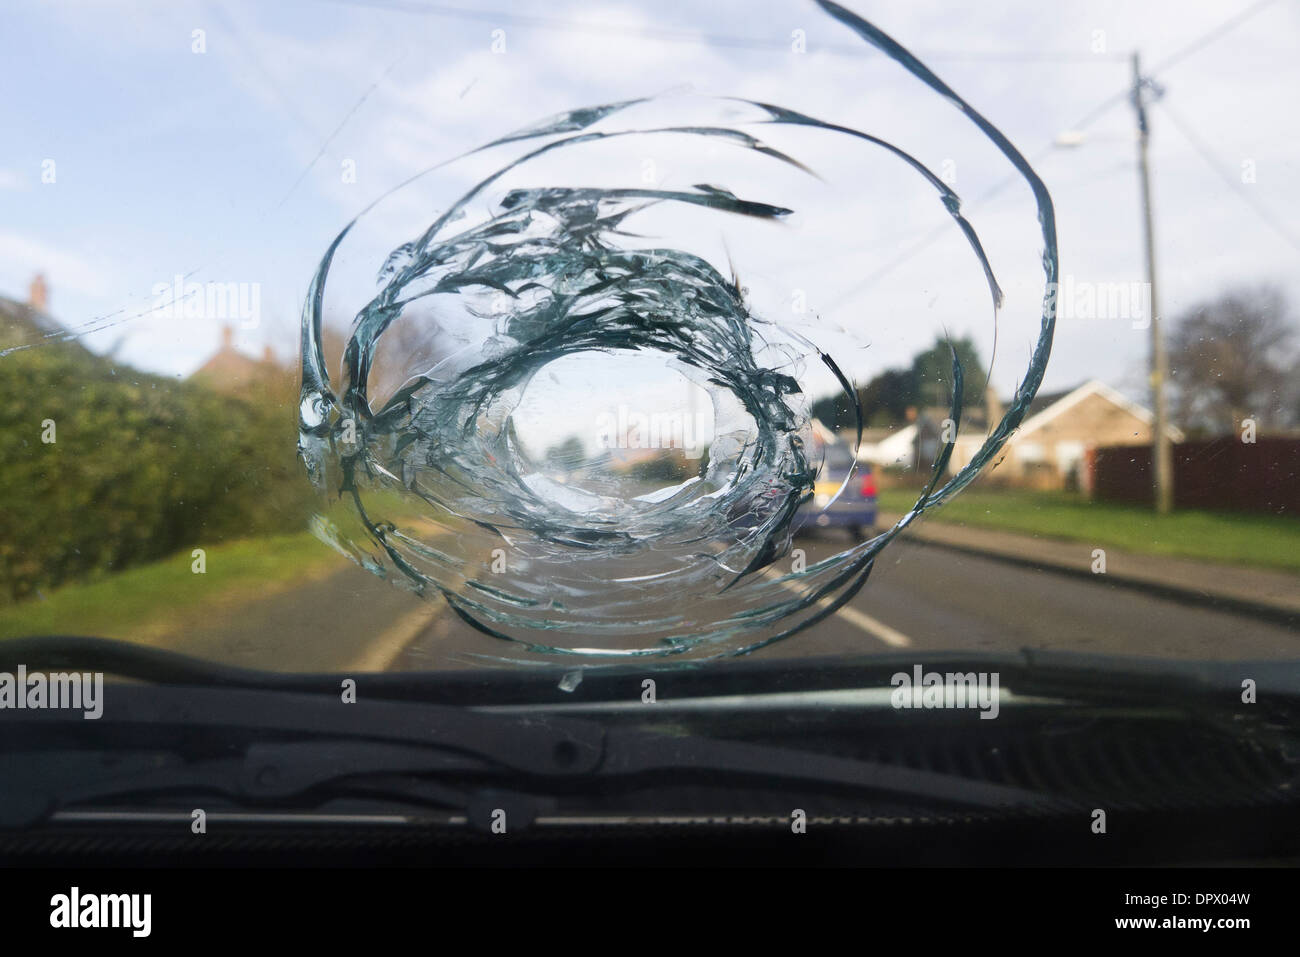 Vehicle windscreen damaged by a stone. Stock Photo